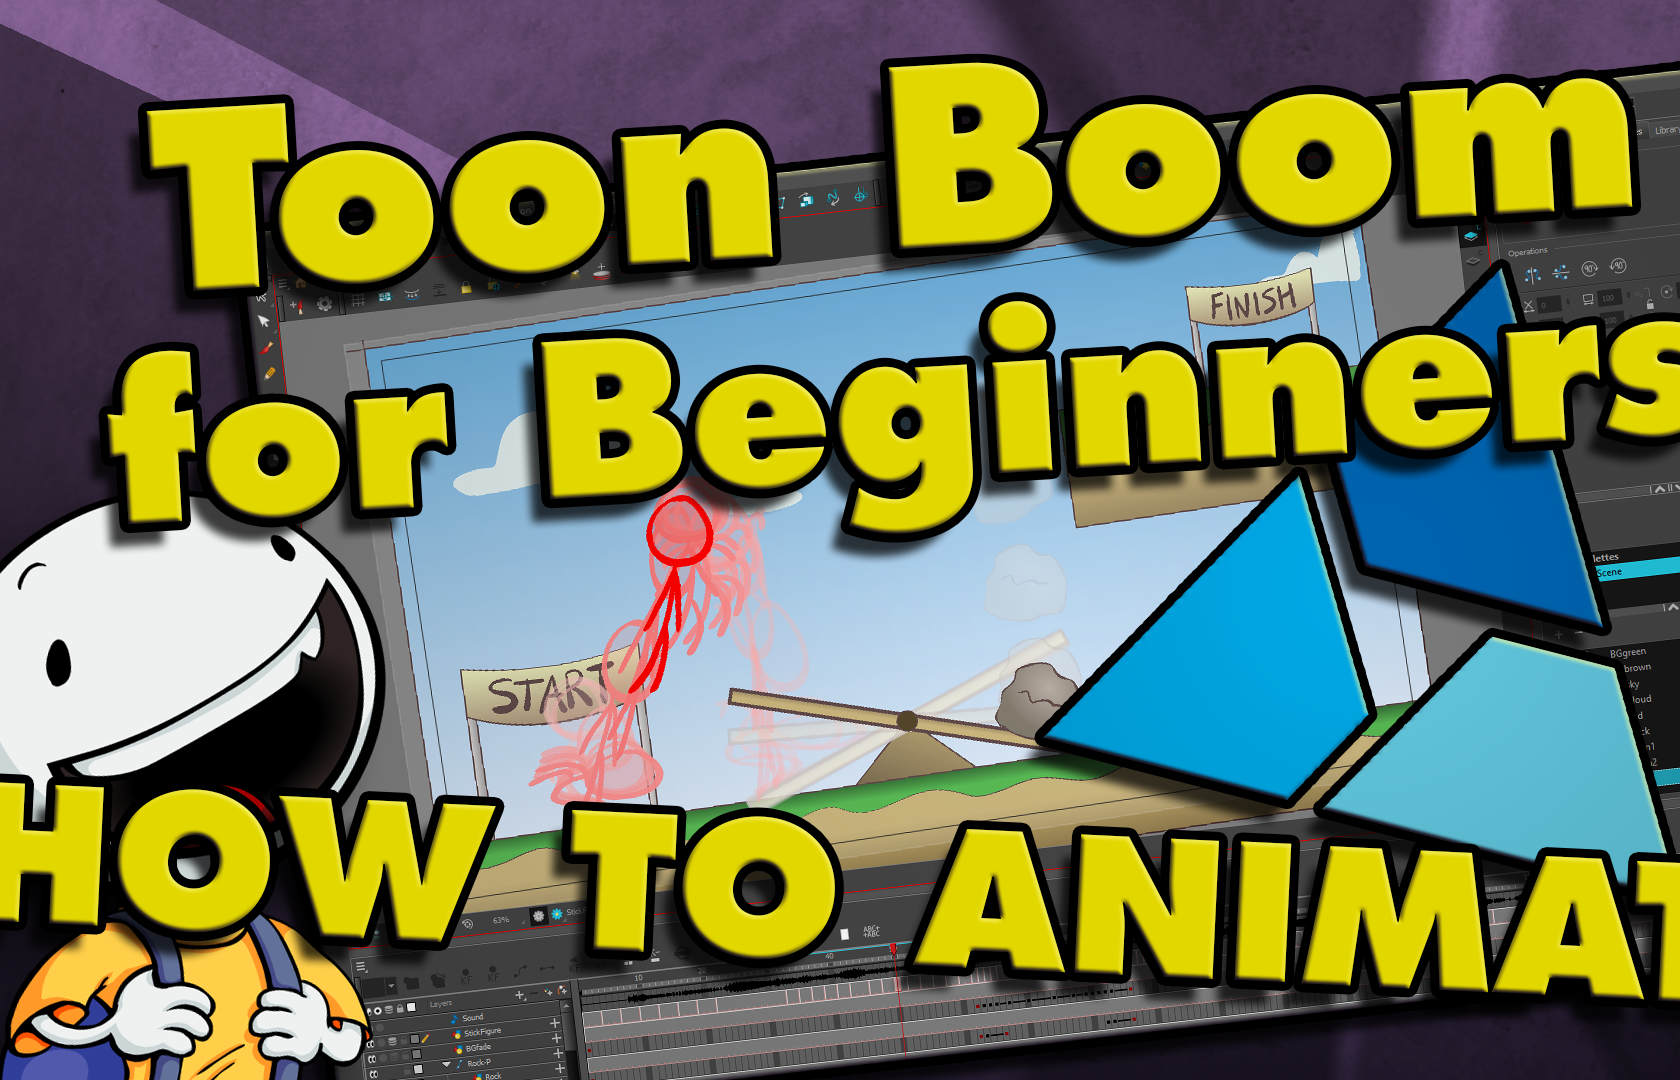 toon boom studio tutorials for beginners